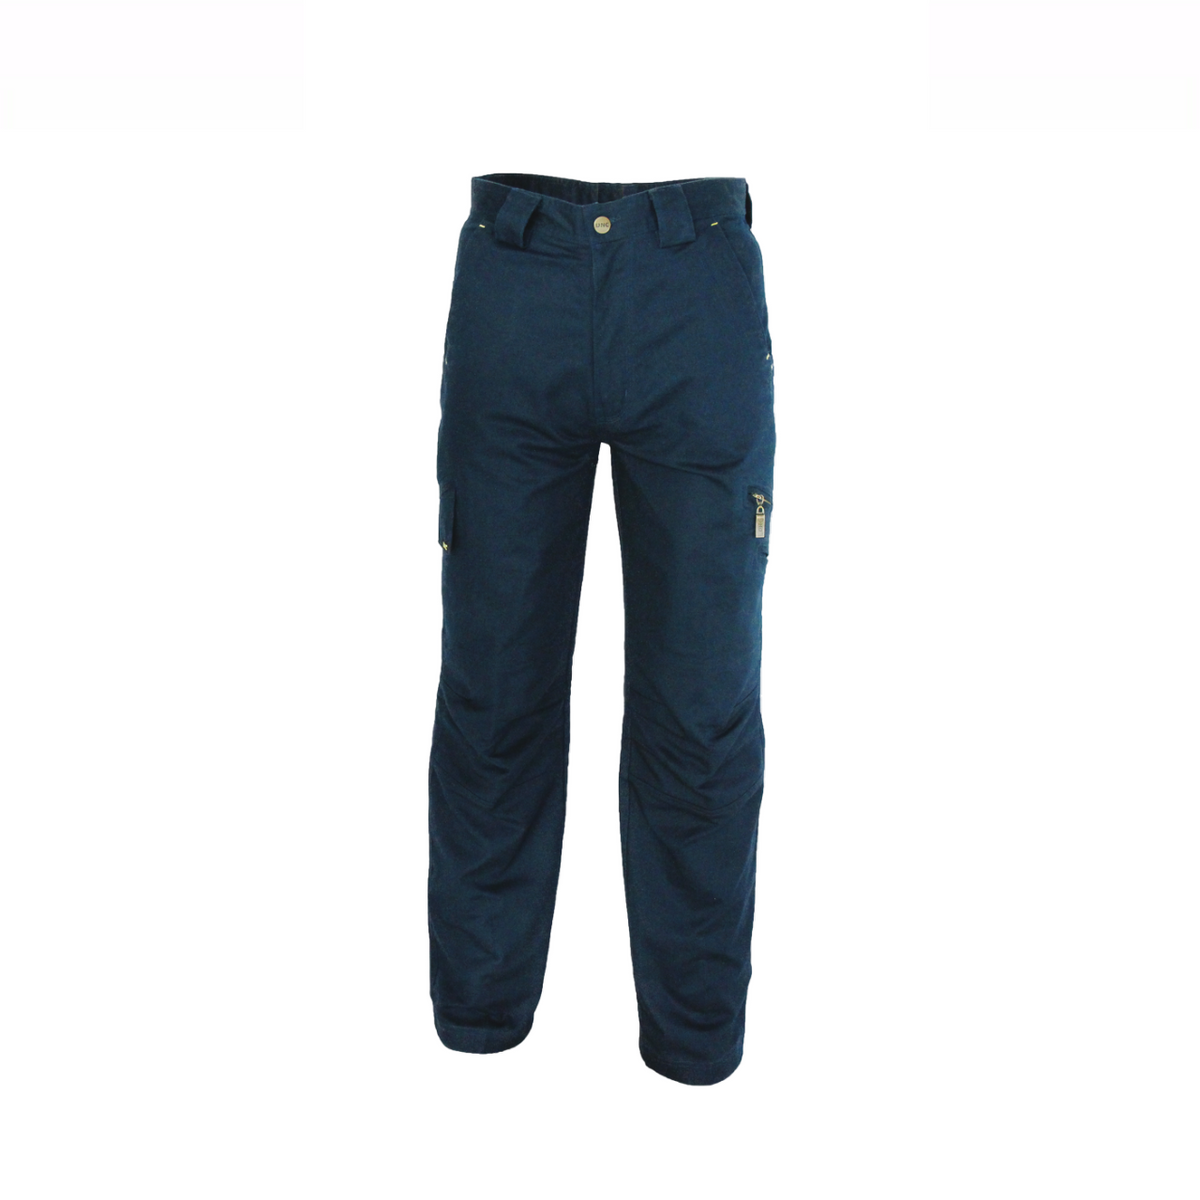 DNC Workwear Men RipStop Tradies Cargo Pants Comfortable Tough Pant Work 3384